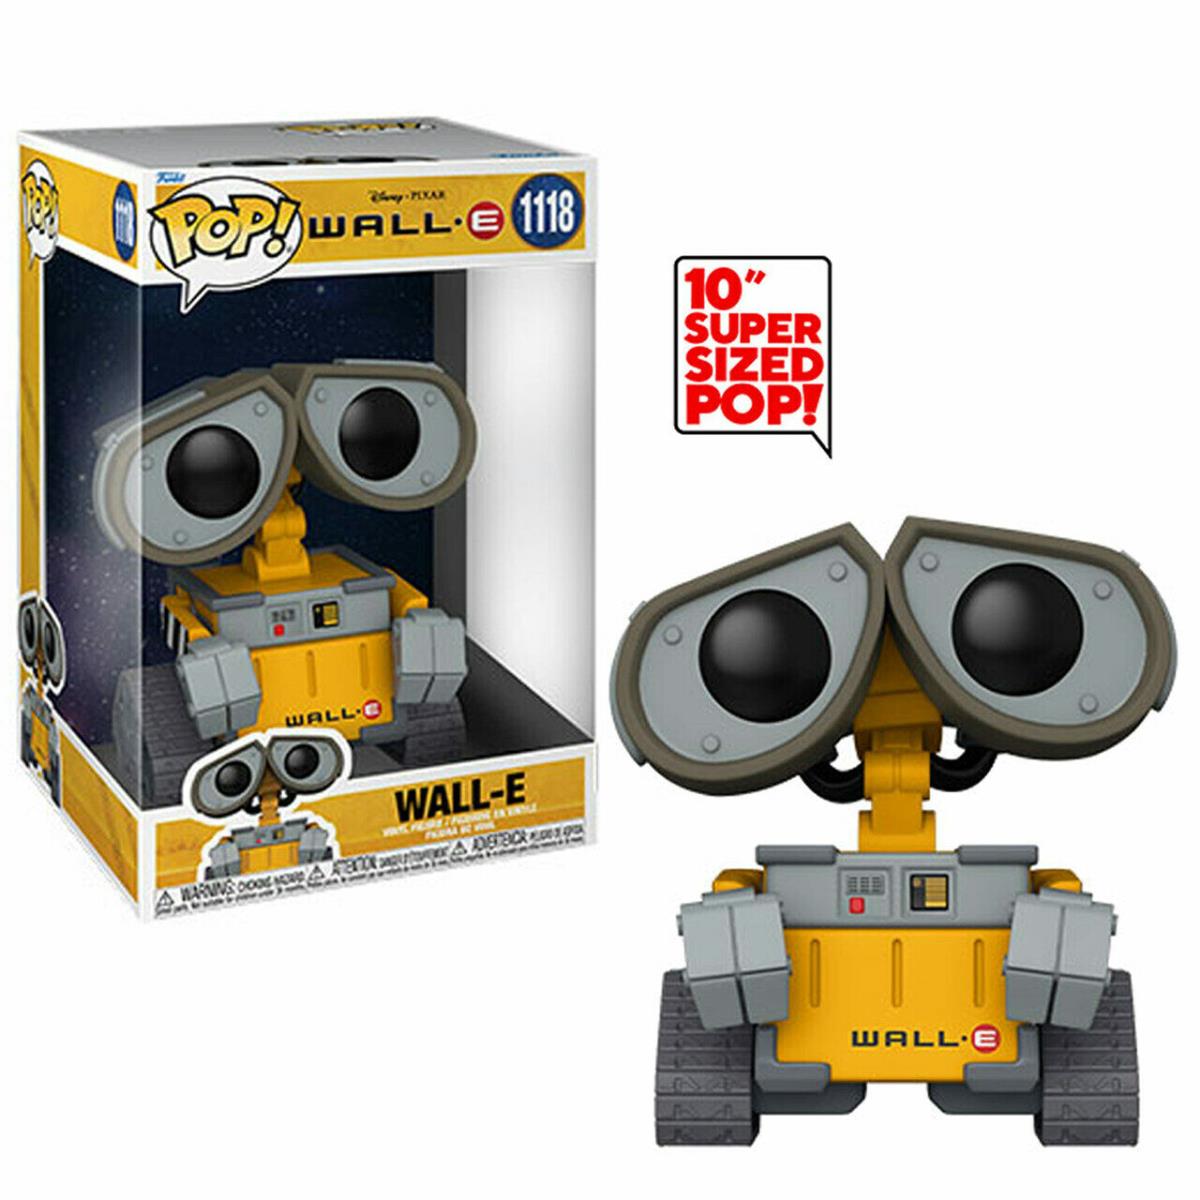 Walt Disney Wall-e 10 Super Sized Pop Figure Toy 1118 Funko